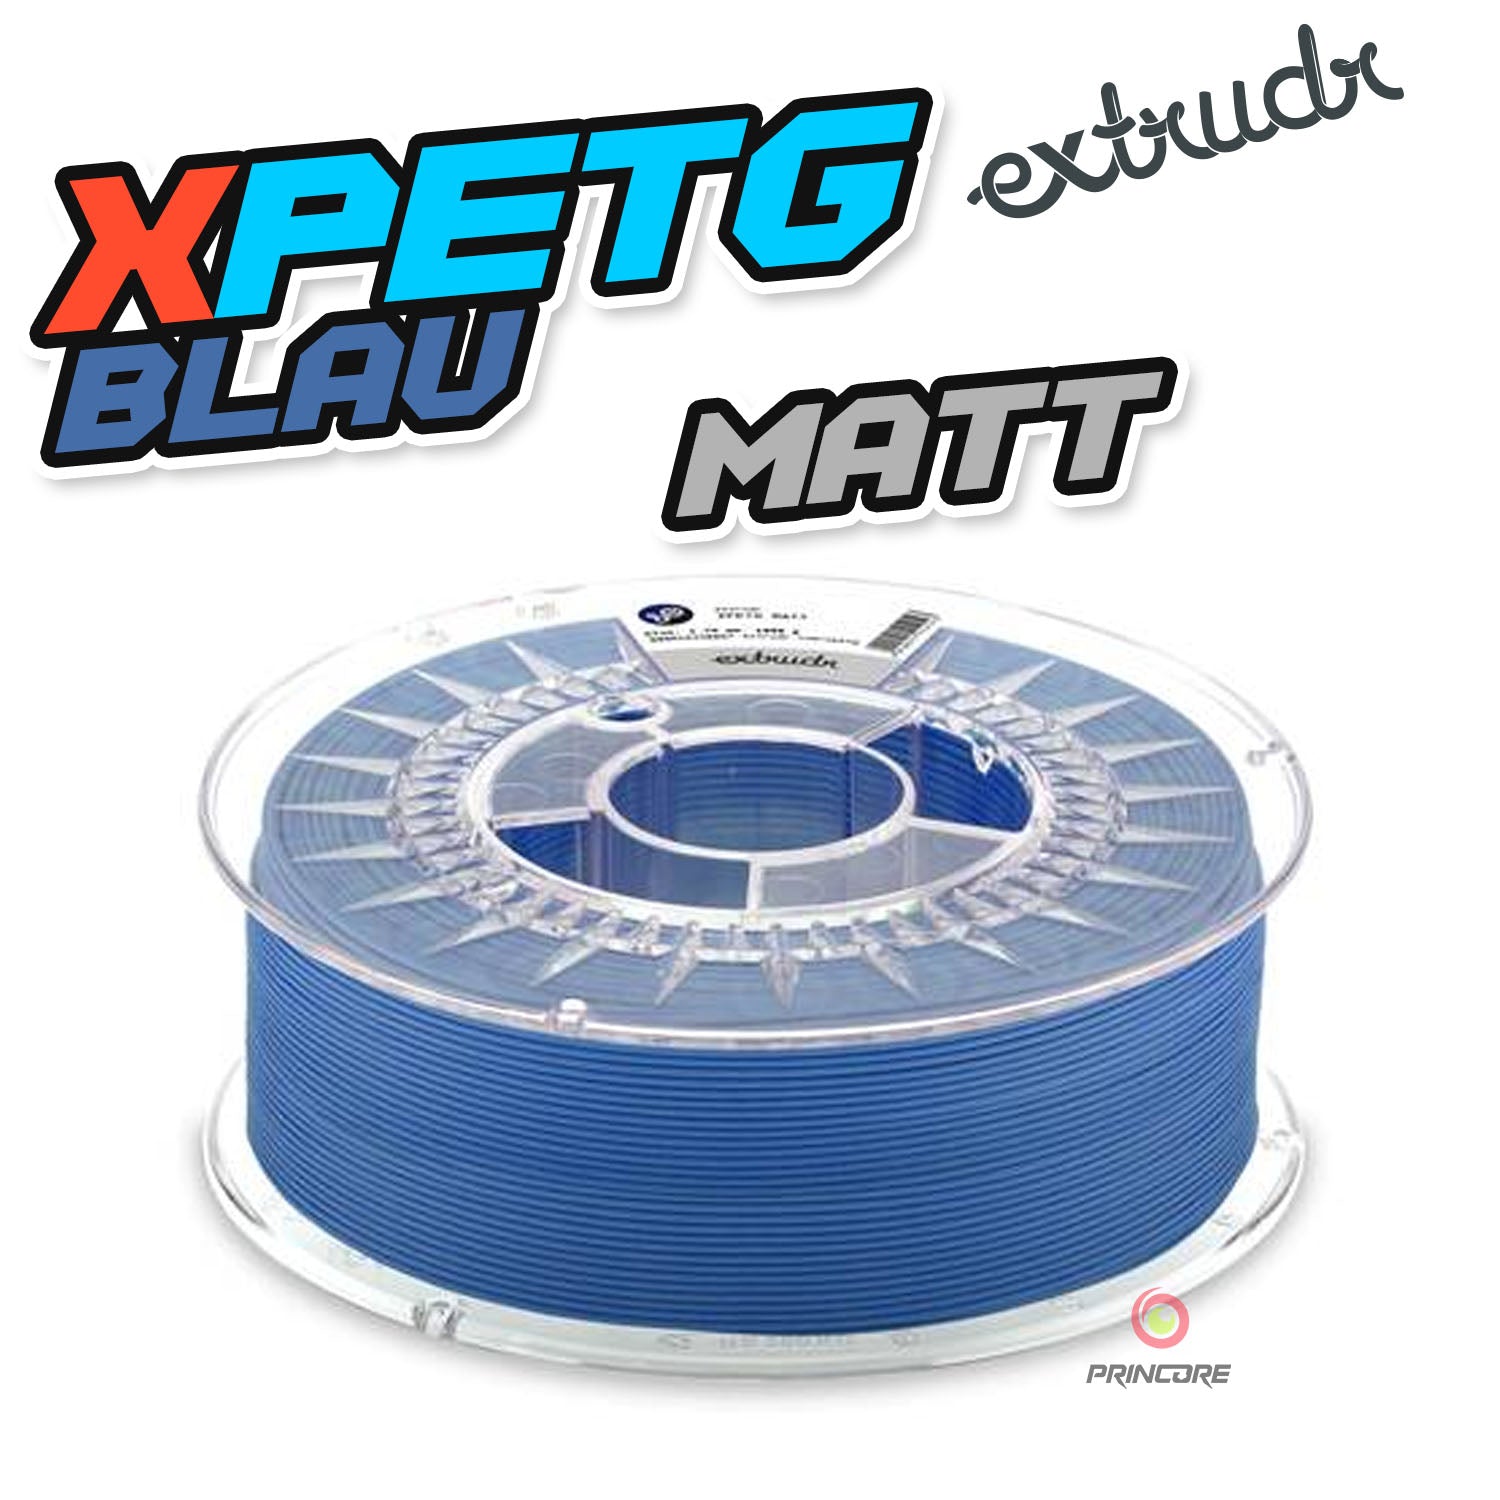 Extrudr XPETG - Blue Matt [1.75mm] (29,90€/Kg)